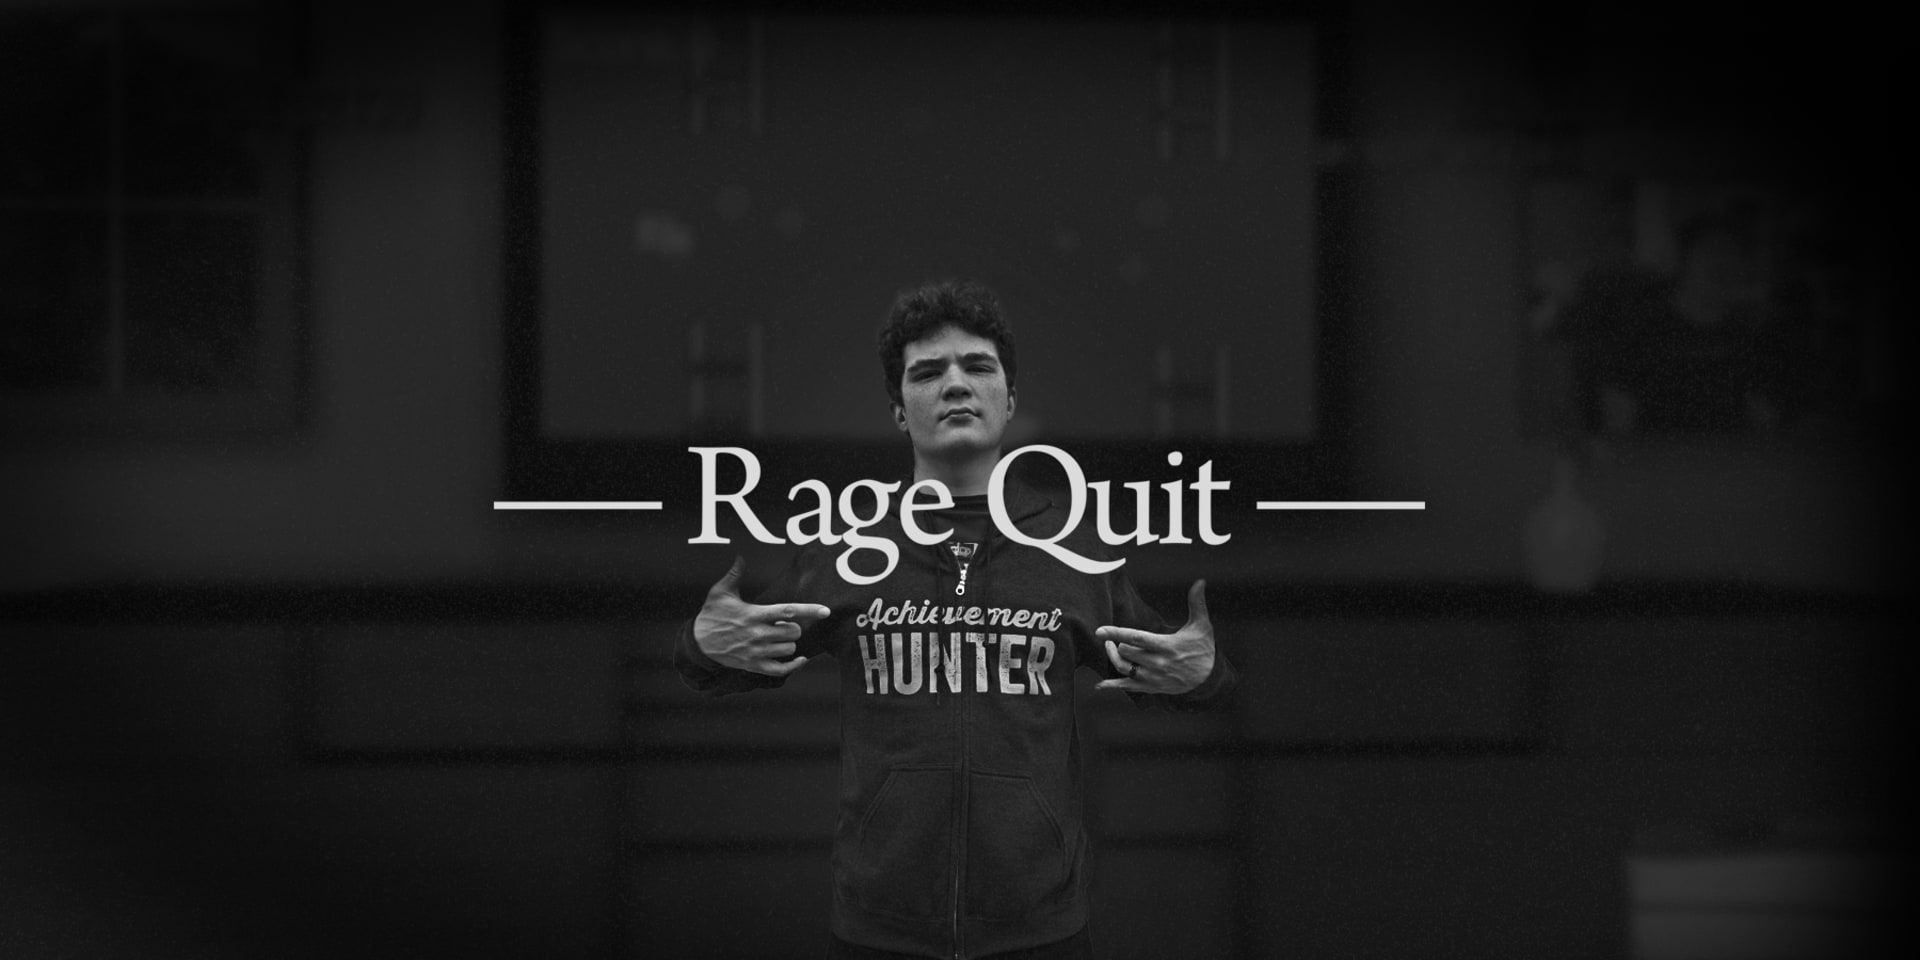 Series Rage Quit - Rooster Teeth